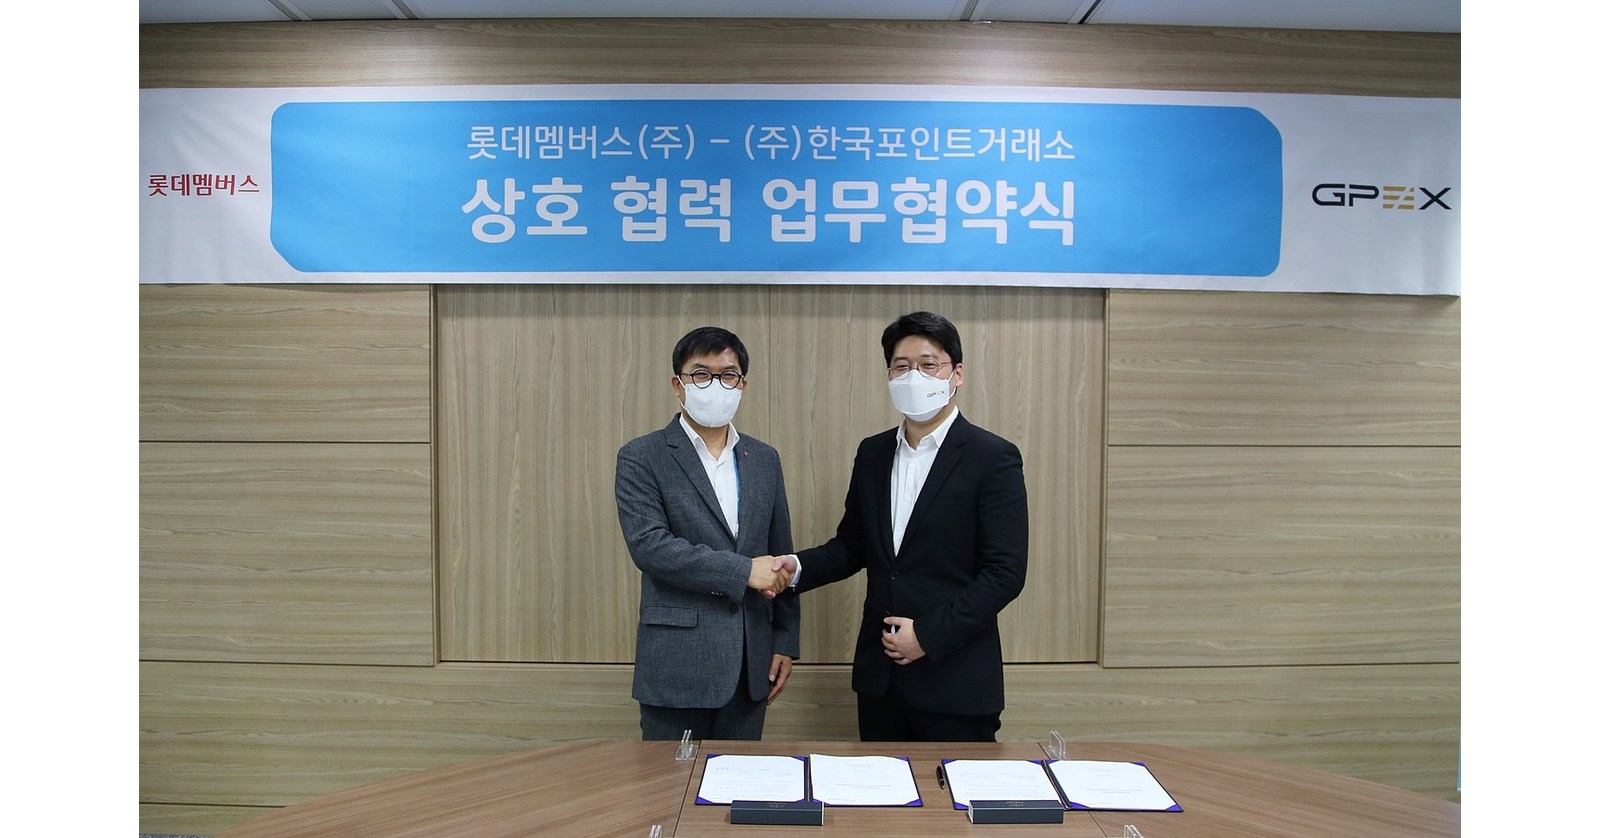 한국포인트거래소(이하 KPX)는 GPEX 플랫폼을 대표해 롯데 회원들과 포인트 및 멤버십 사업 확대를 위한 전략적 업무협약을 체결했다.